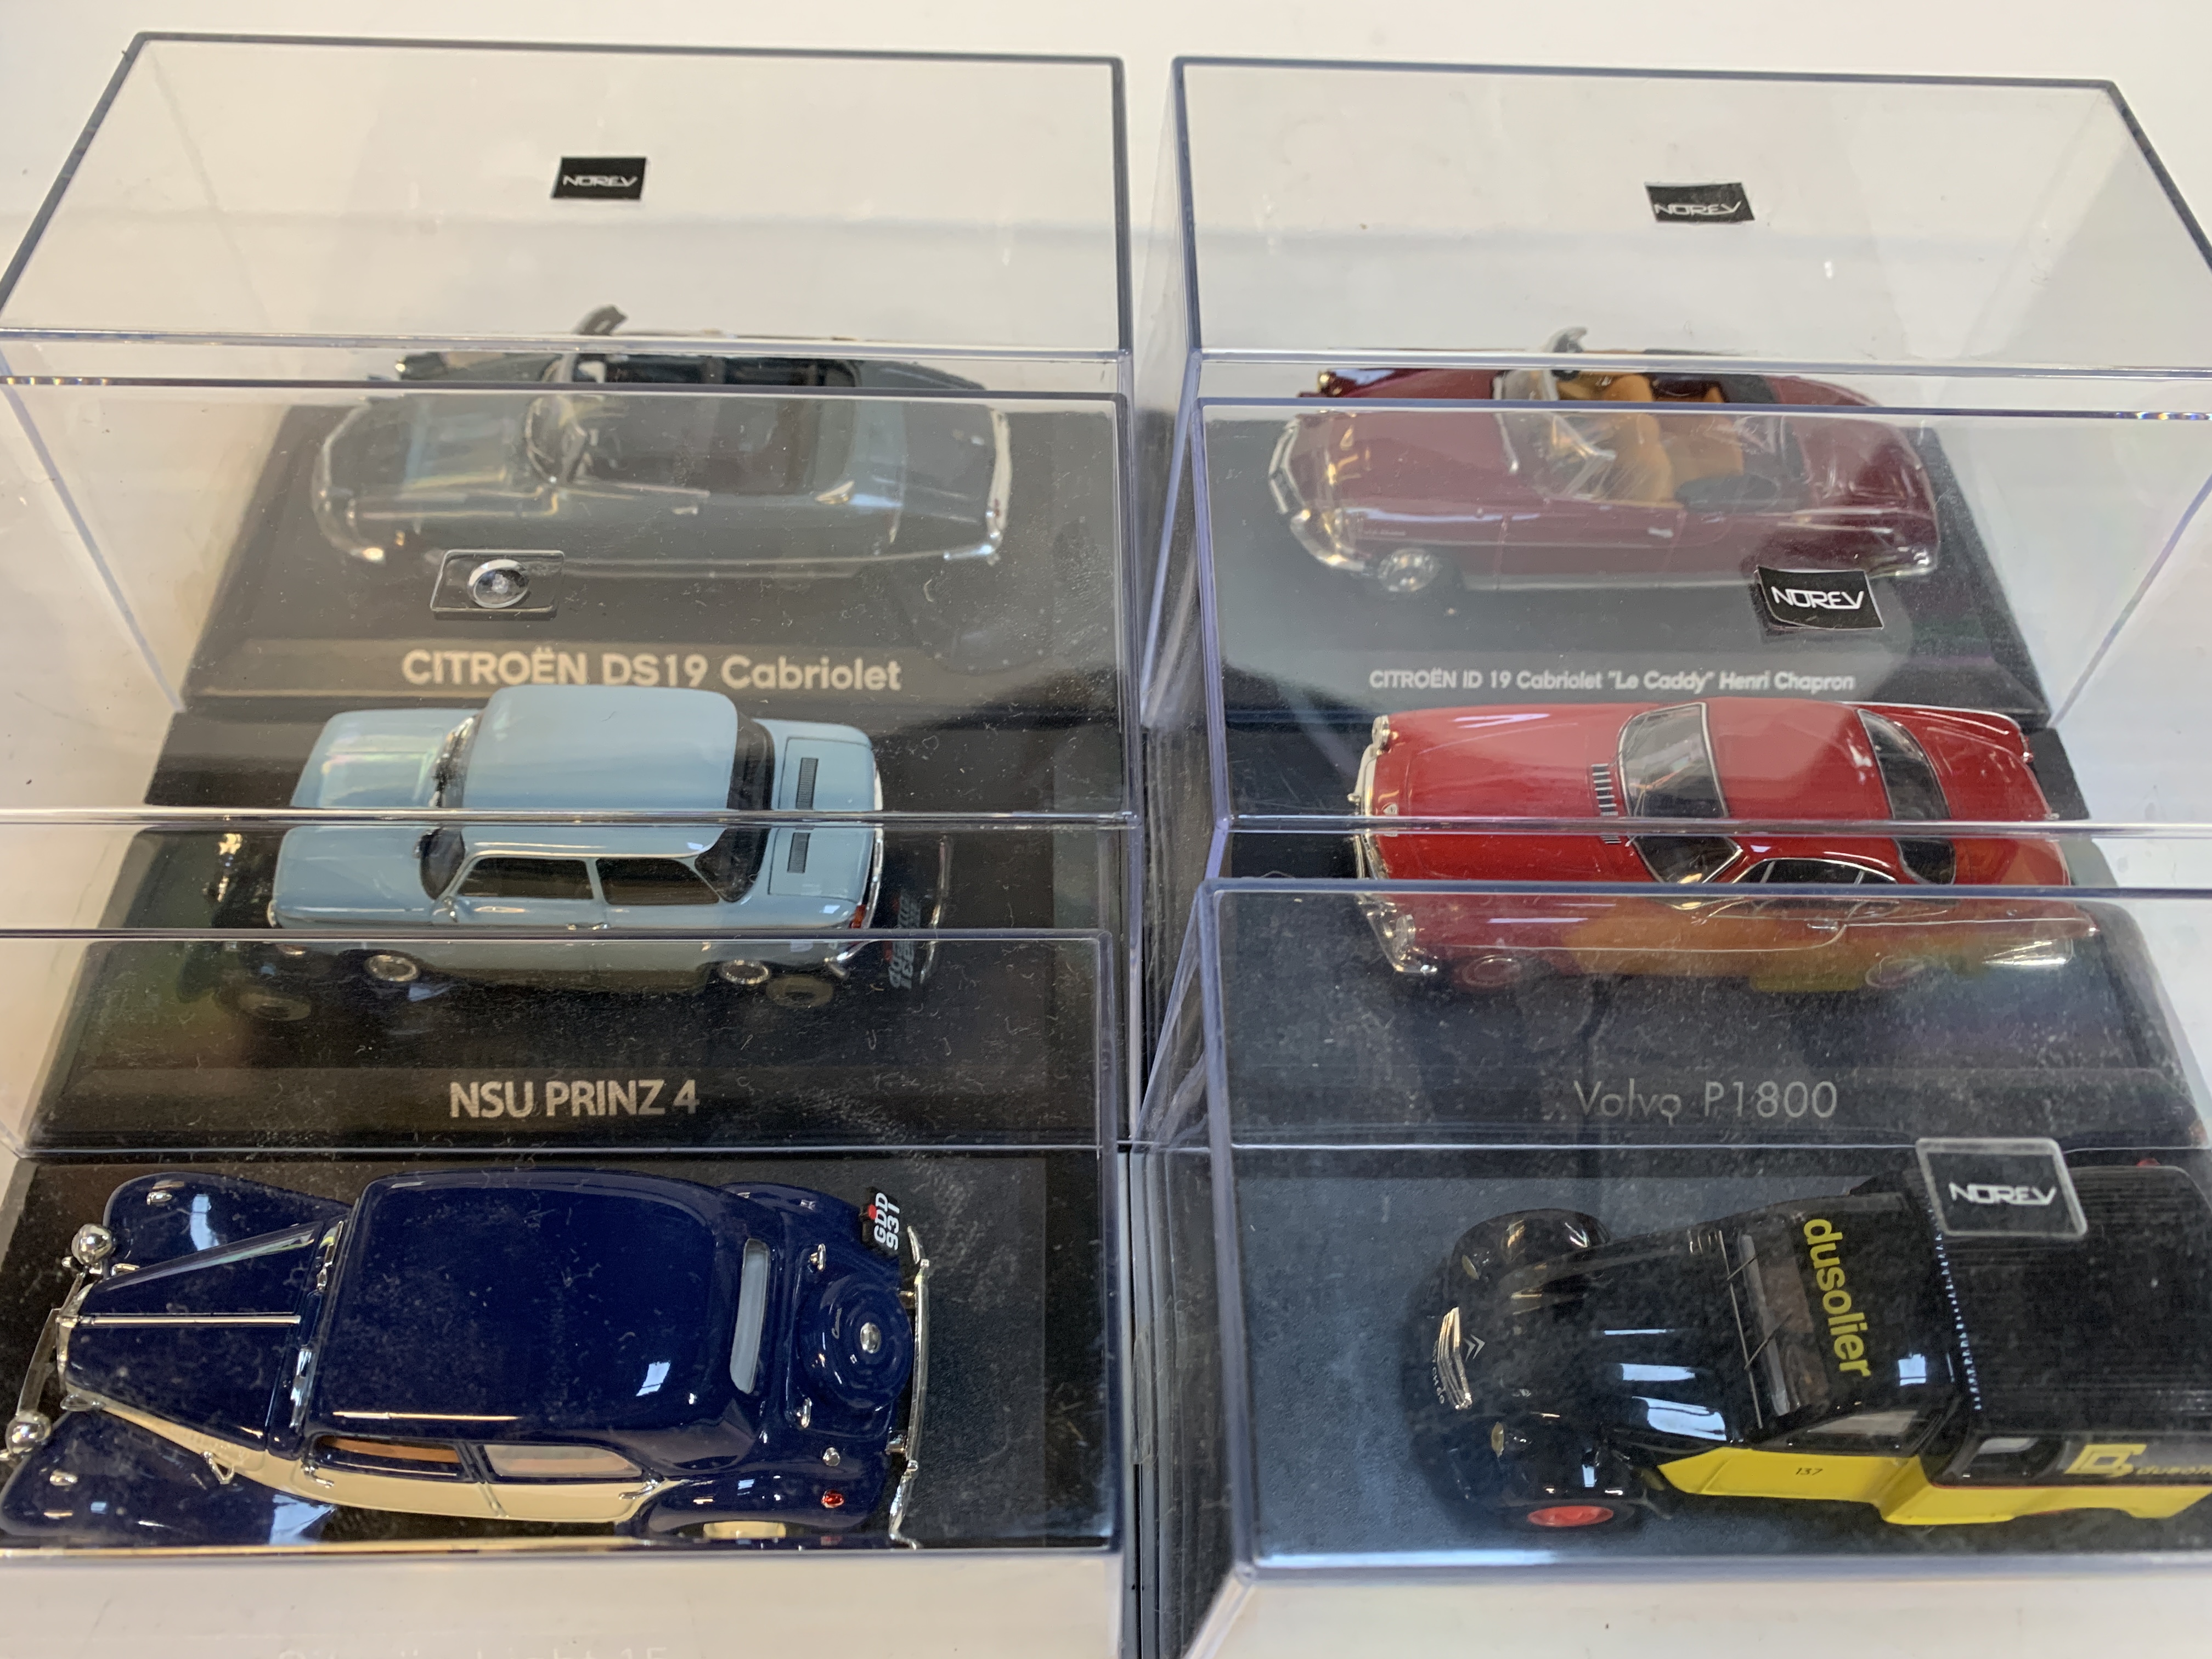 Six various model cars